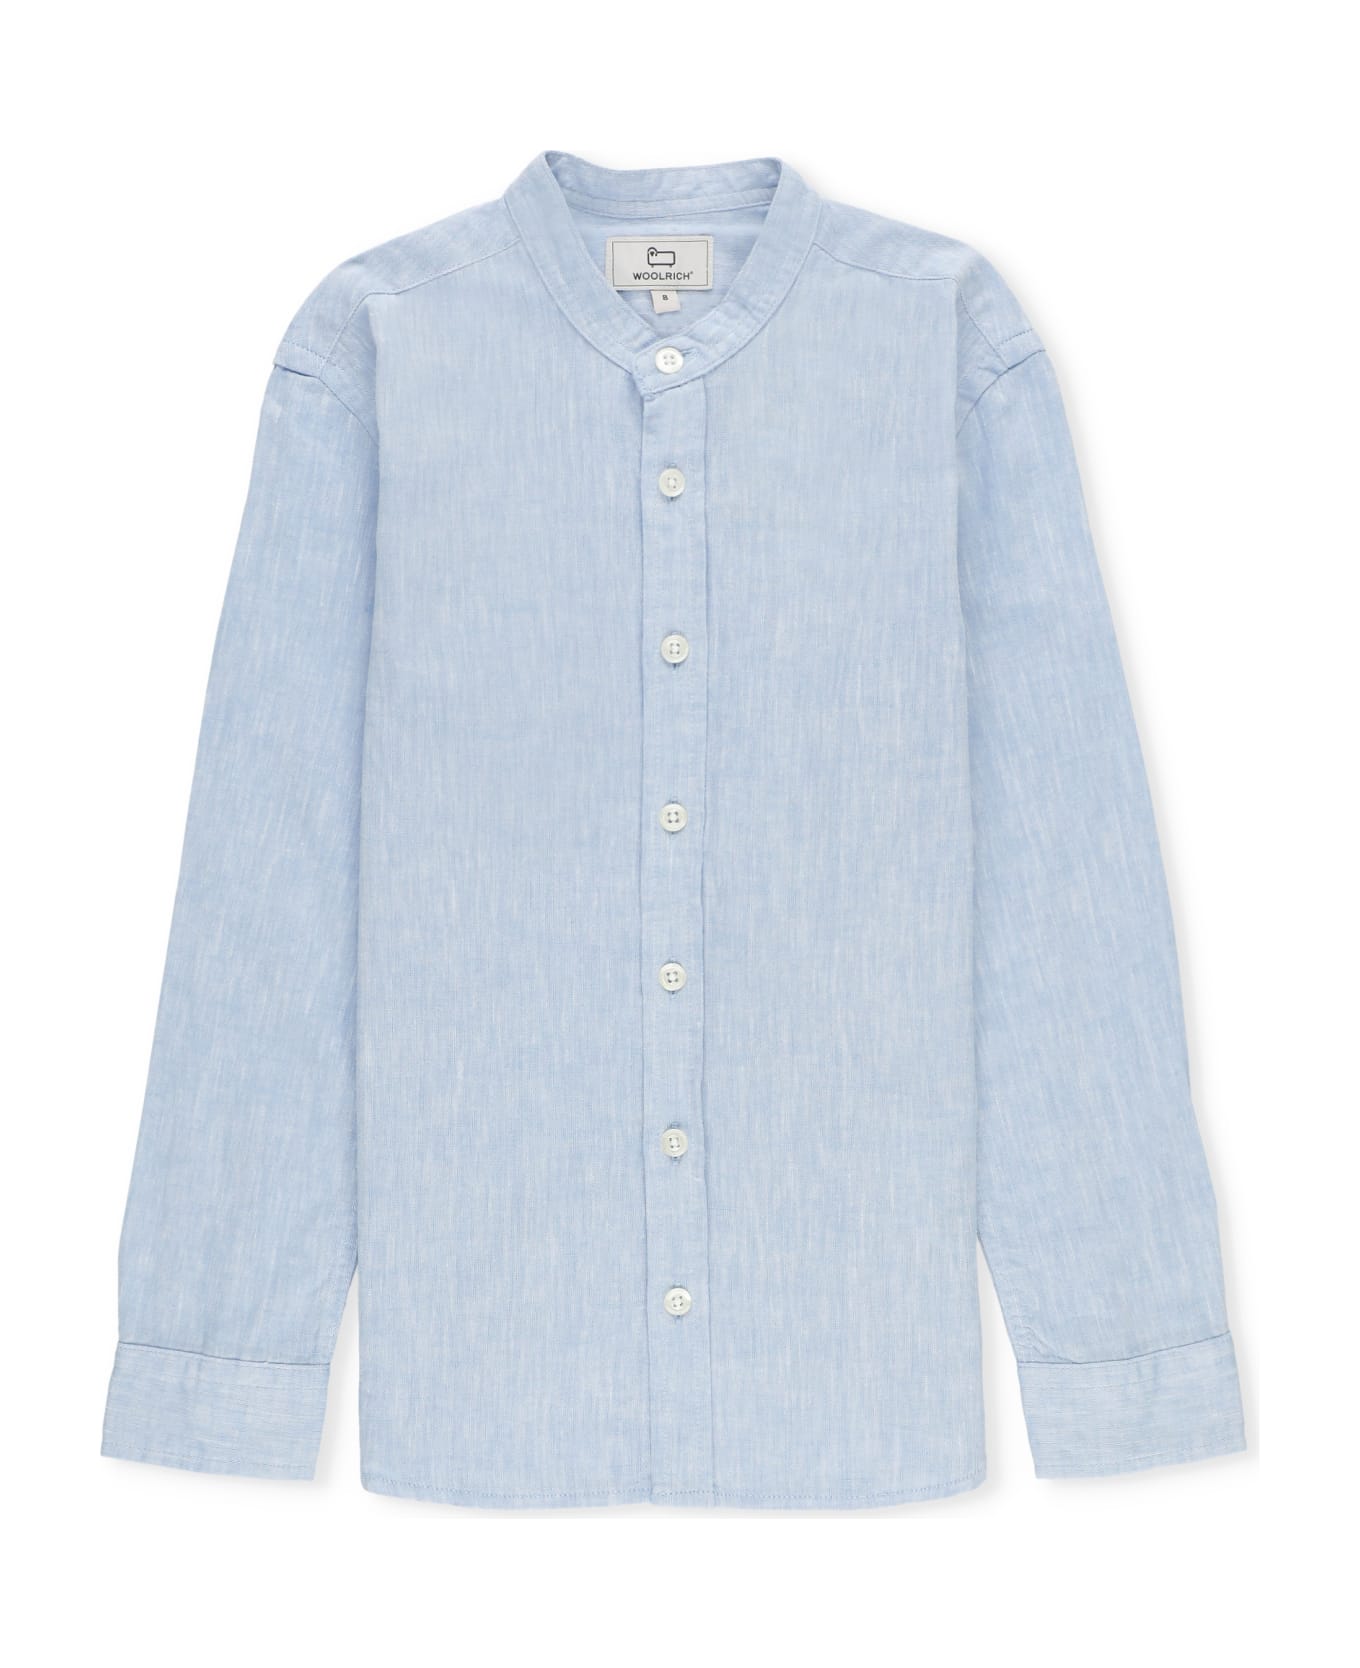 Woolrich Cotton And Linen Shirt - Light Blue シャツ